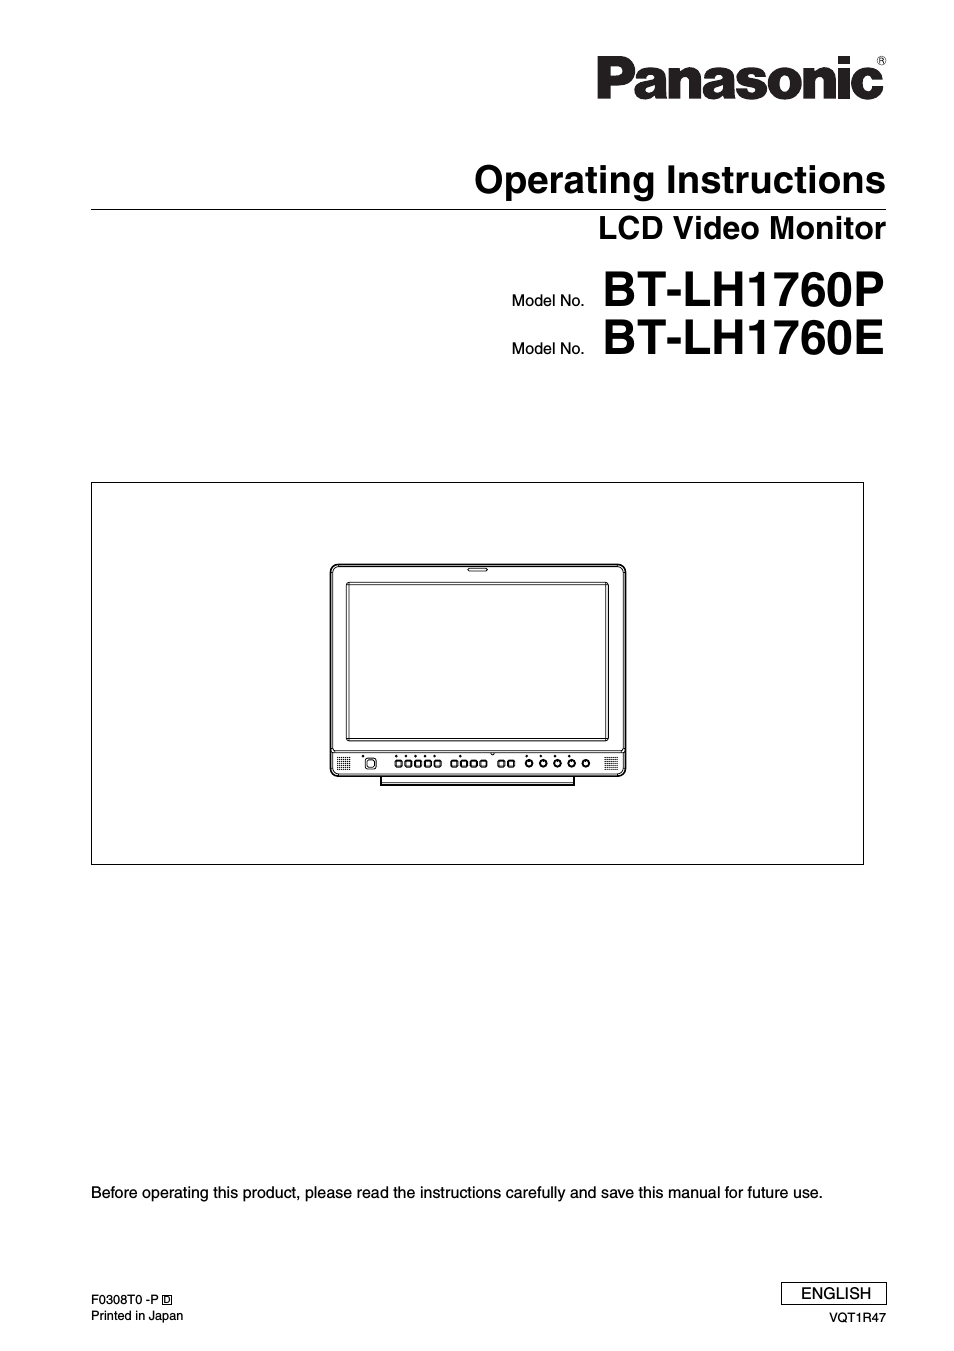 BT-LH1760E